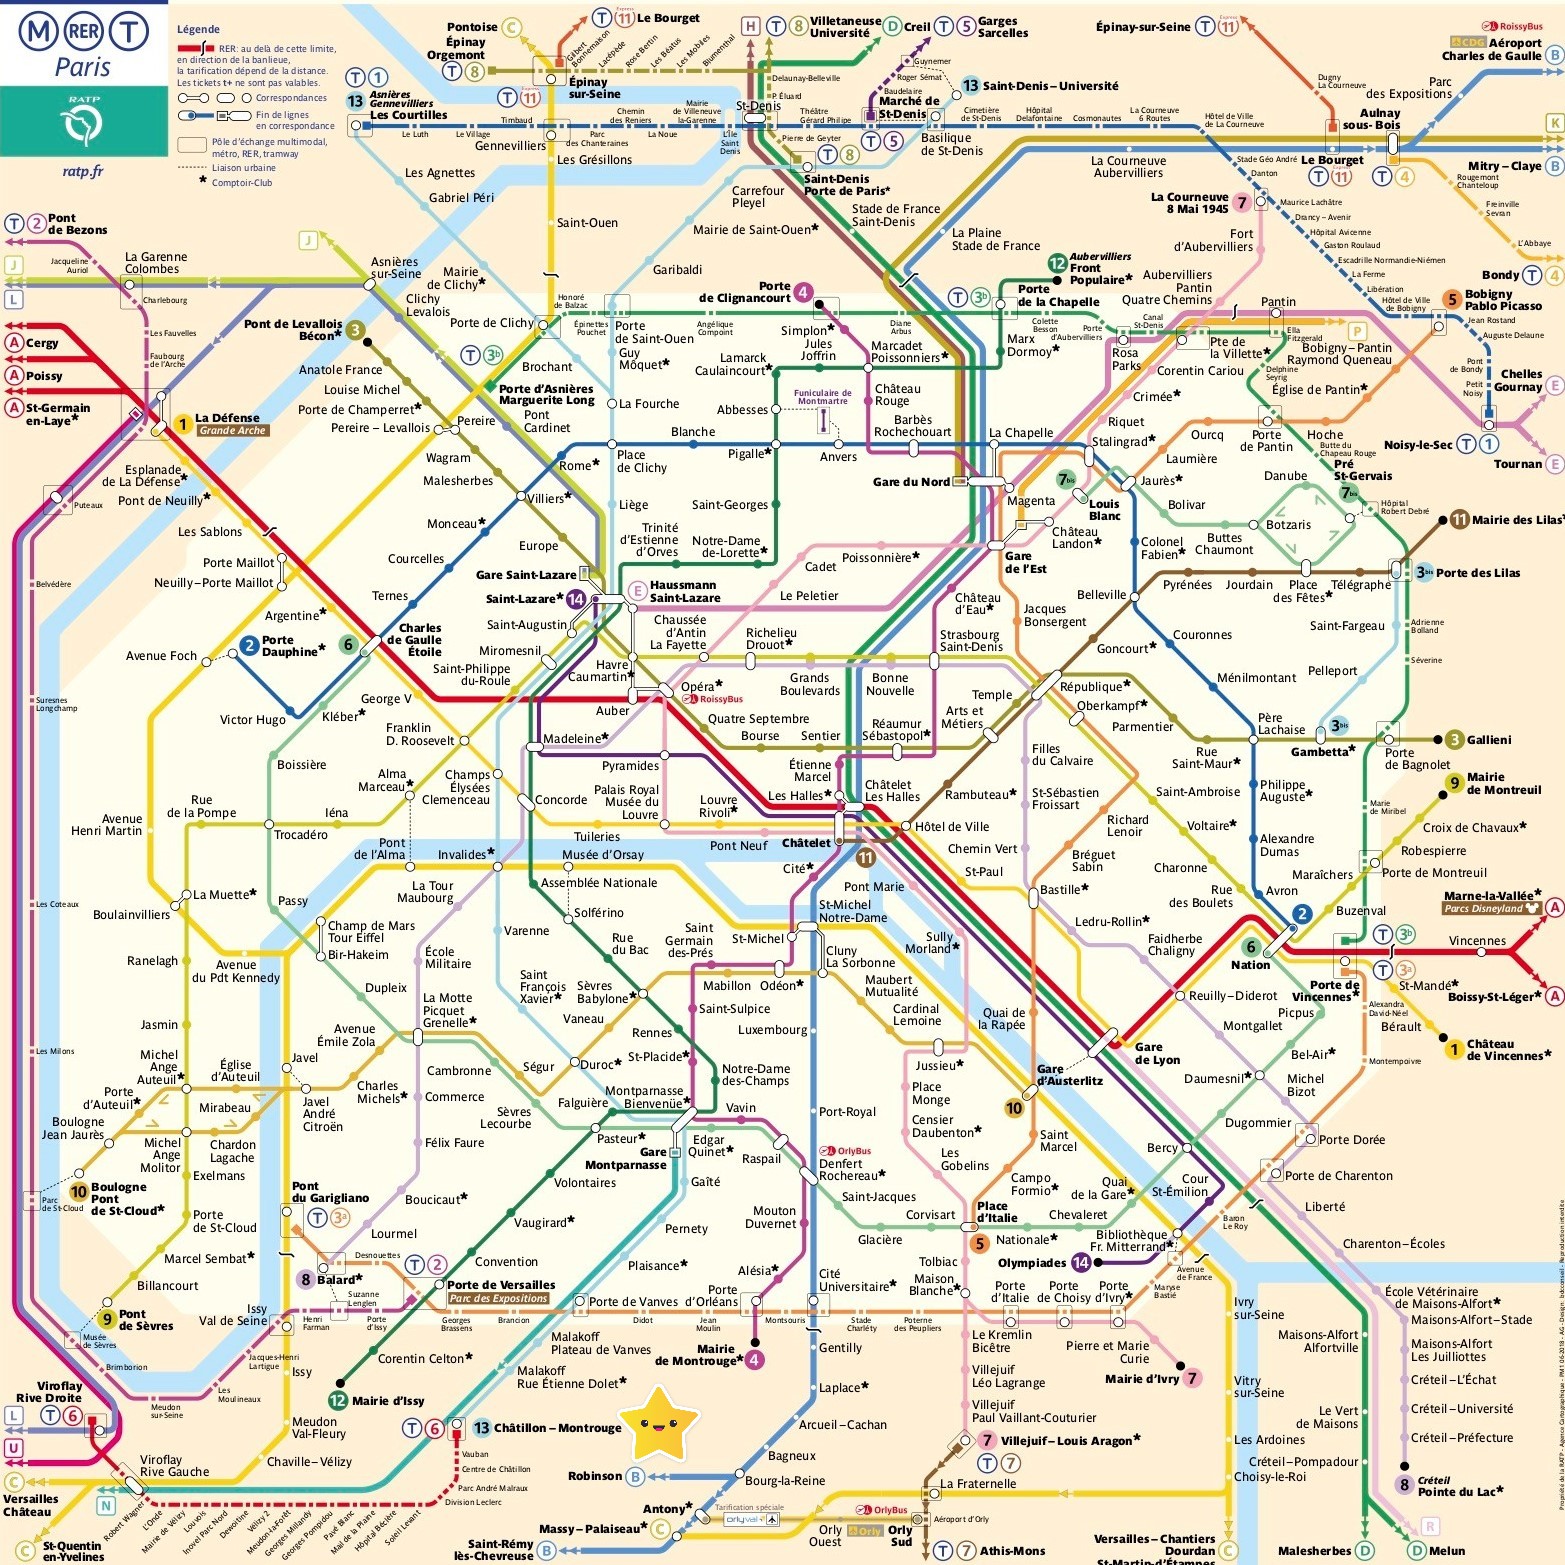 Paris's metro map